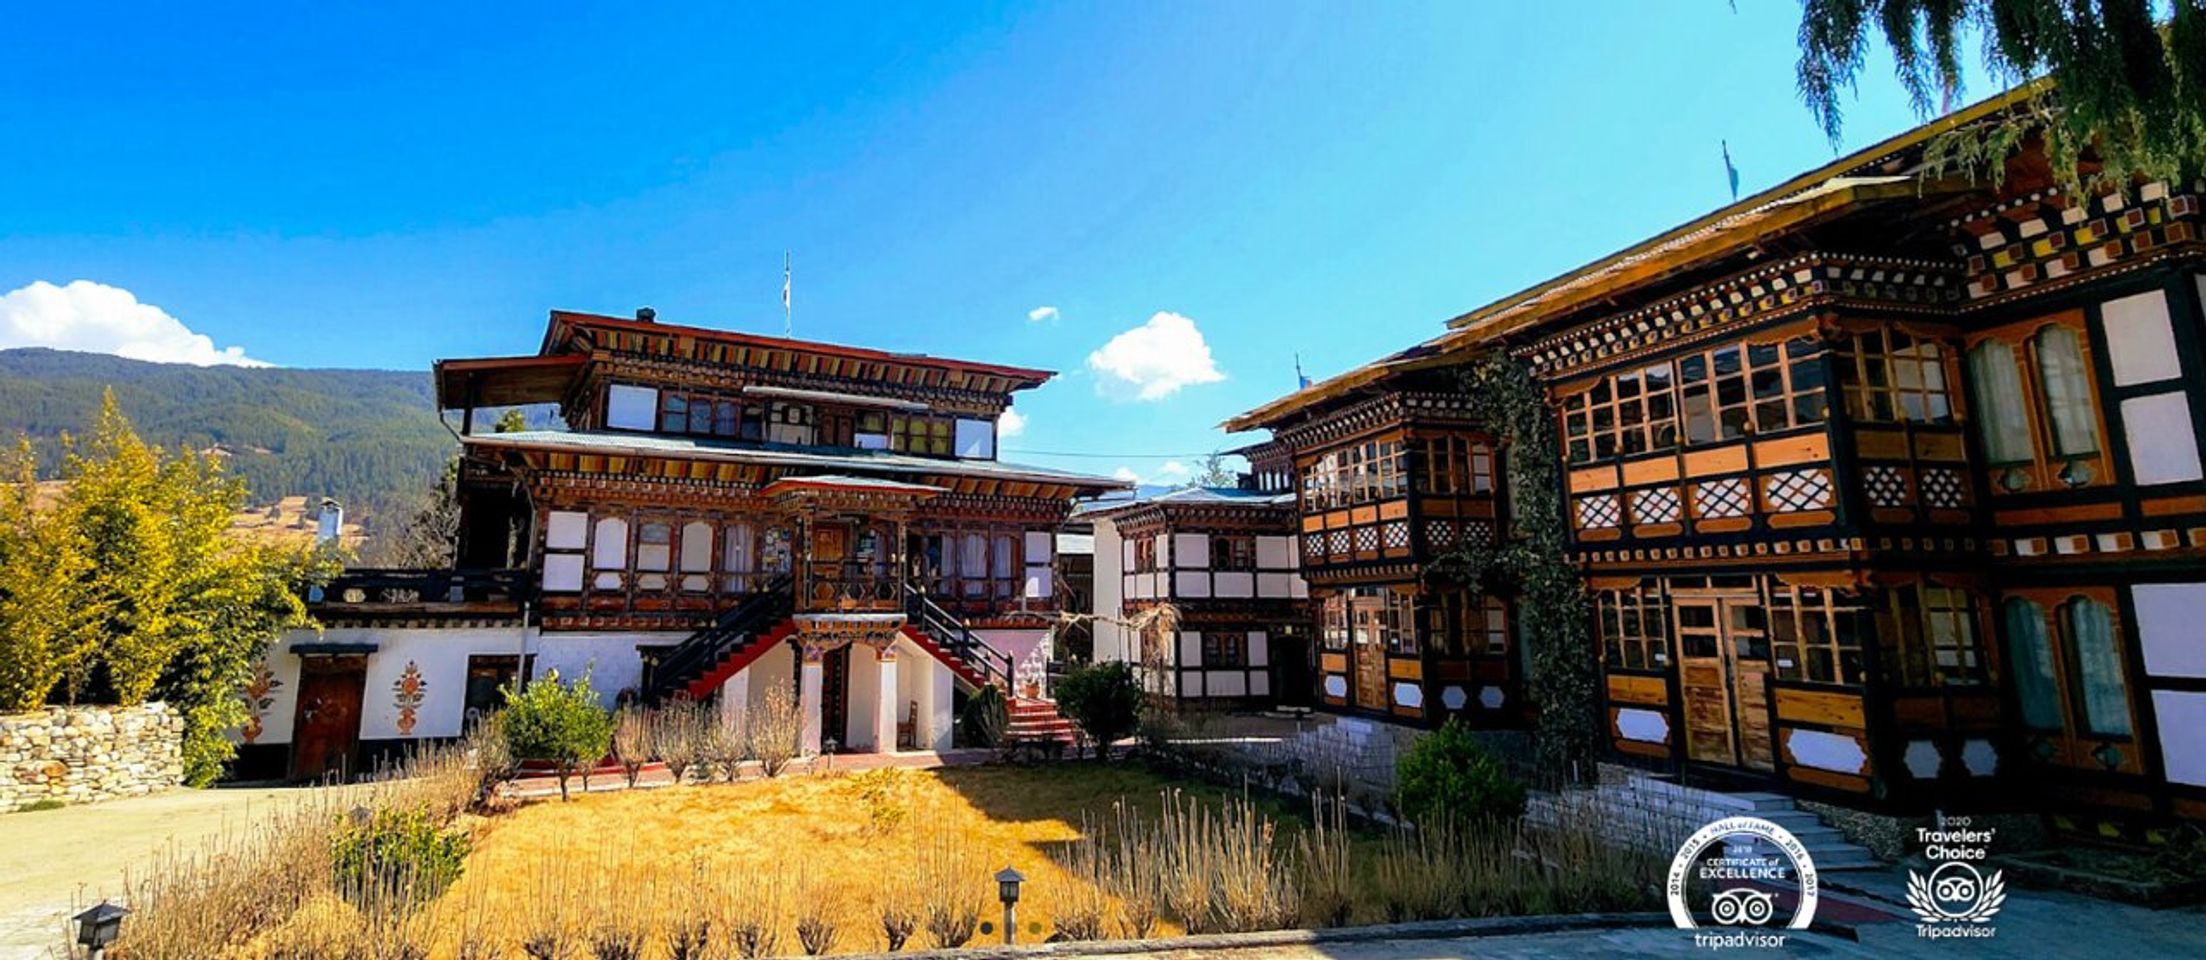 Découvrir les trésors cachés de Jakar, Bhoutan: conseils essentiels pour un voyage inoubliable.